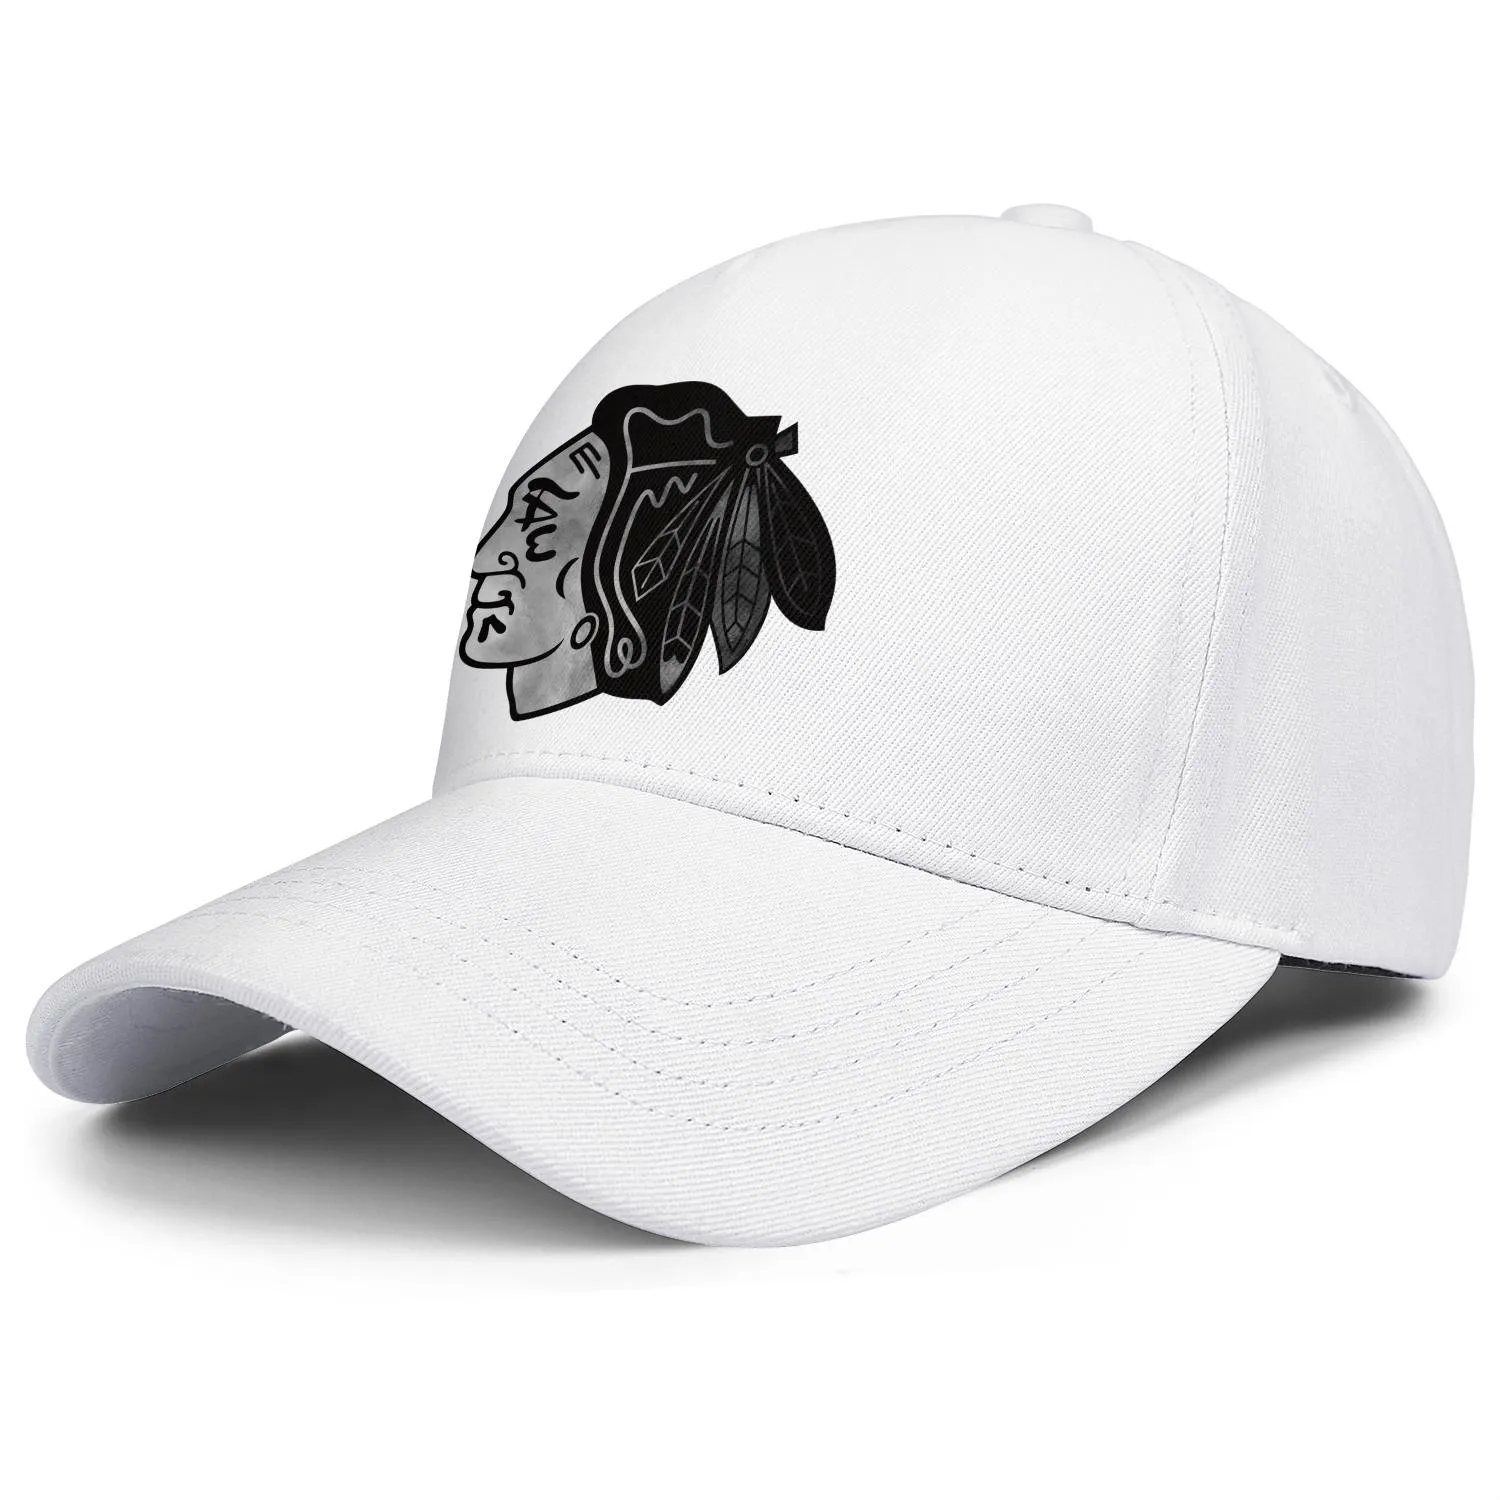 DesignNameg pour hommes et femmes casquette de camionneur réglable cool équipe vintage casquettes de baseball originales logo principal des Blackhawks de Chicago Ash 4802101